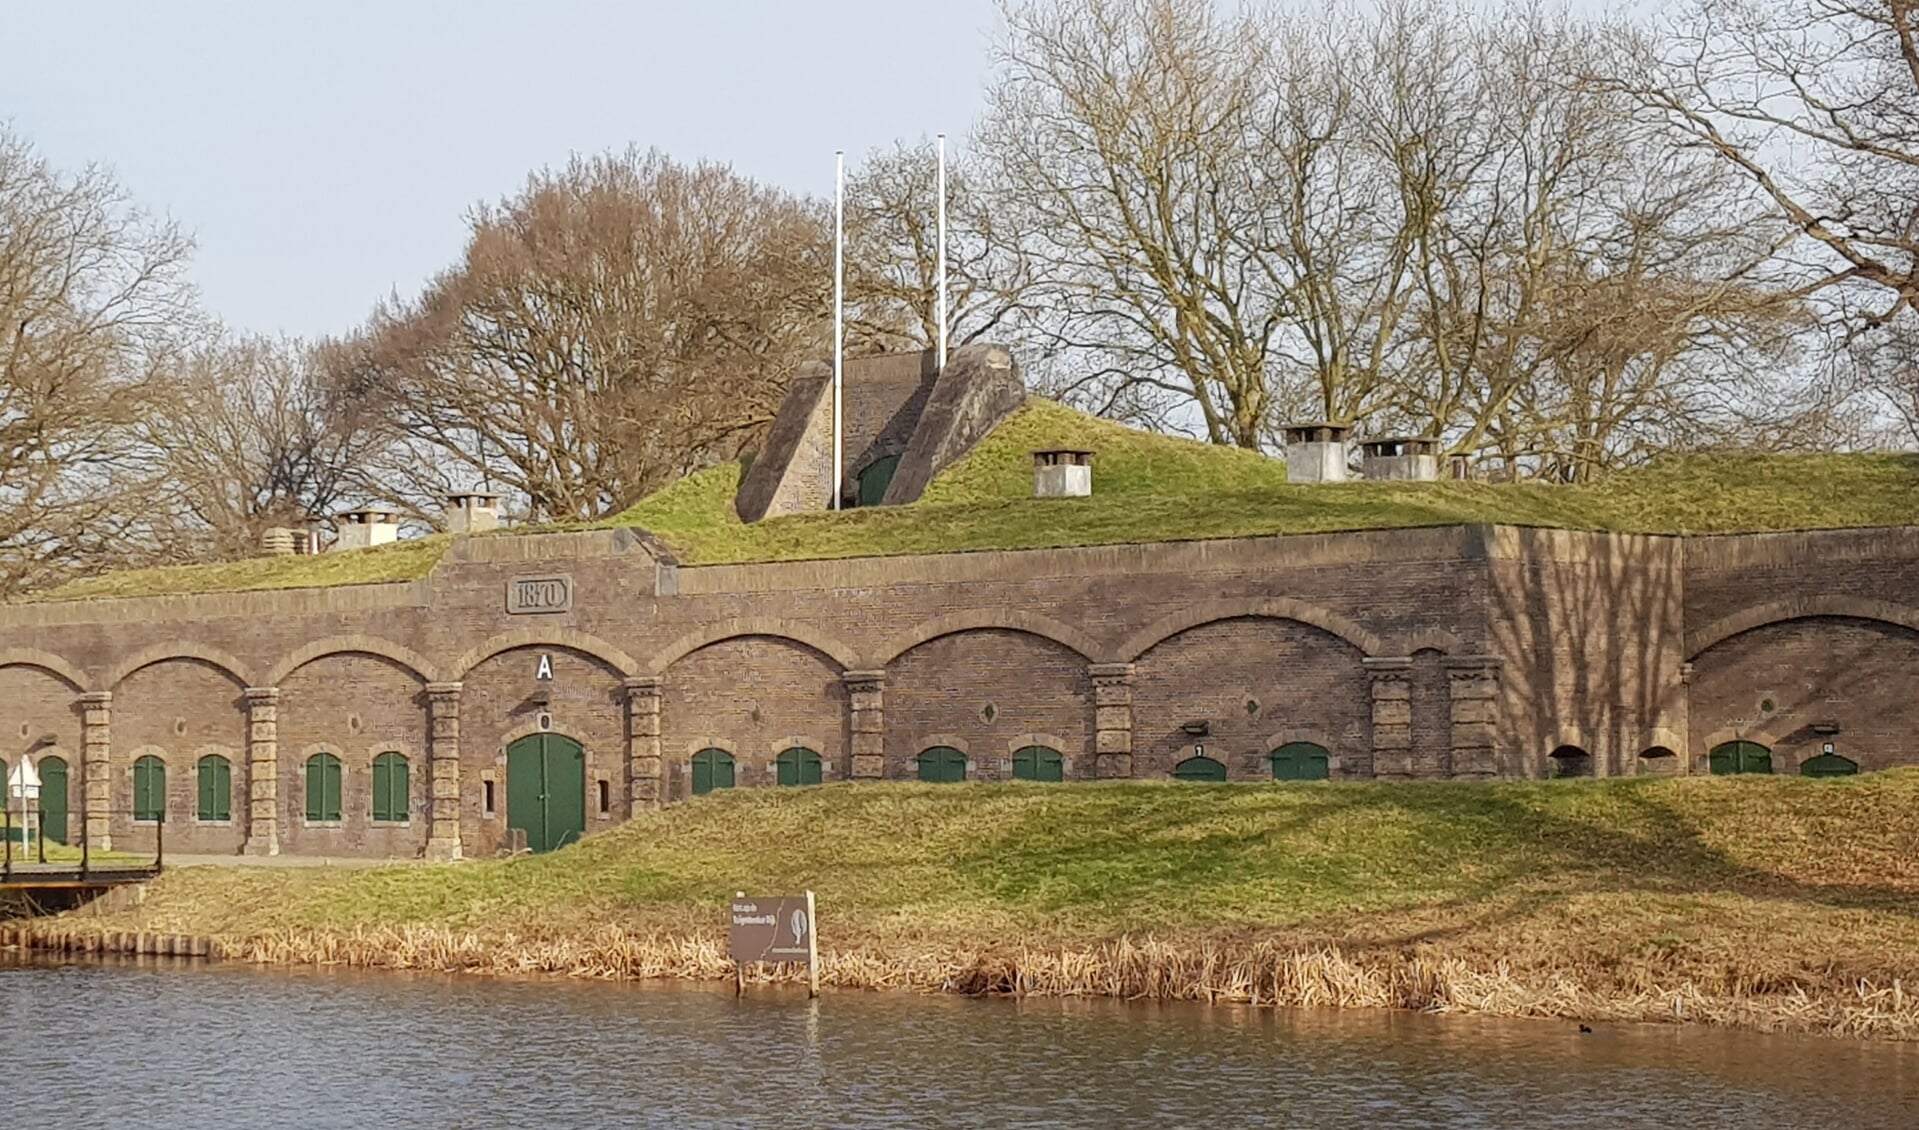 Ontdek Fort Ruigenhoek!